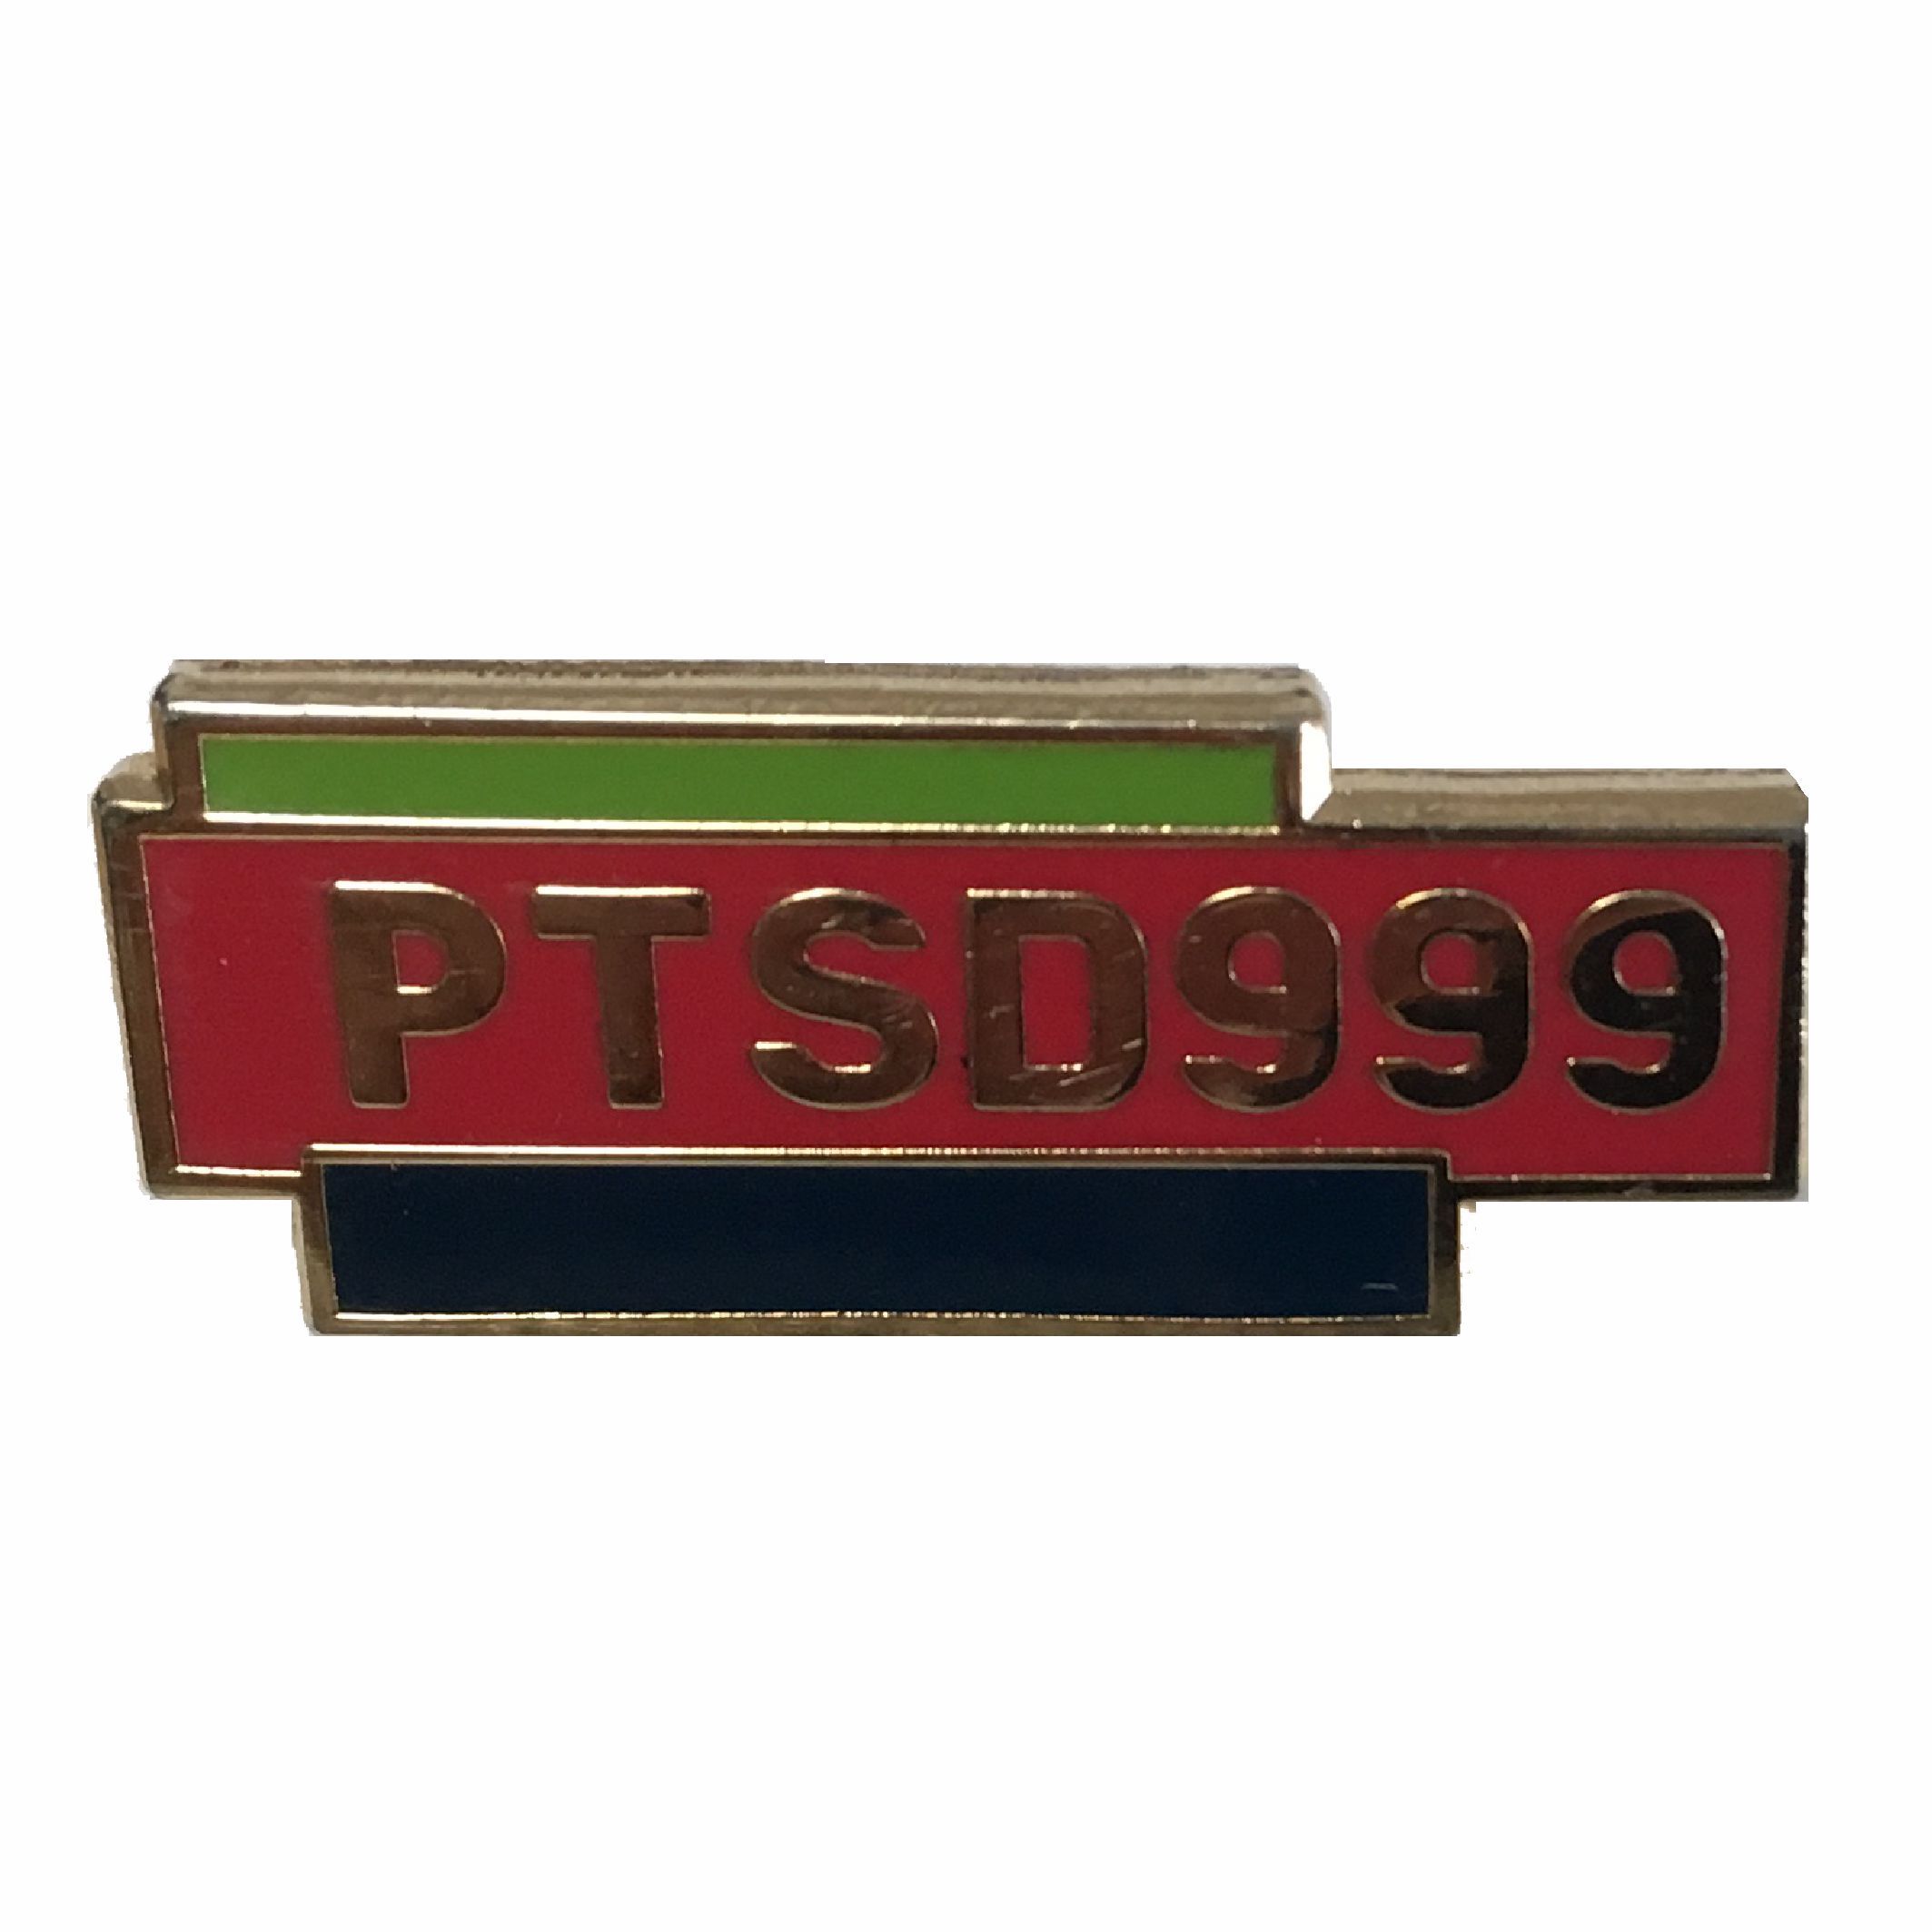 PTSD999- Original Pin Badge 